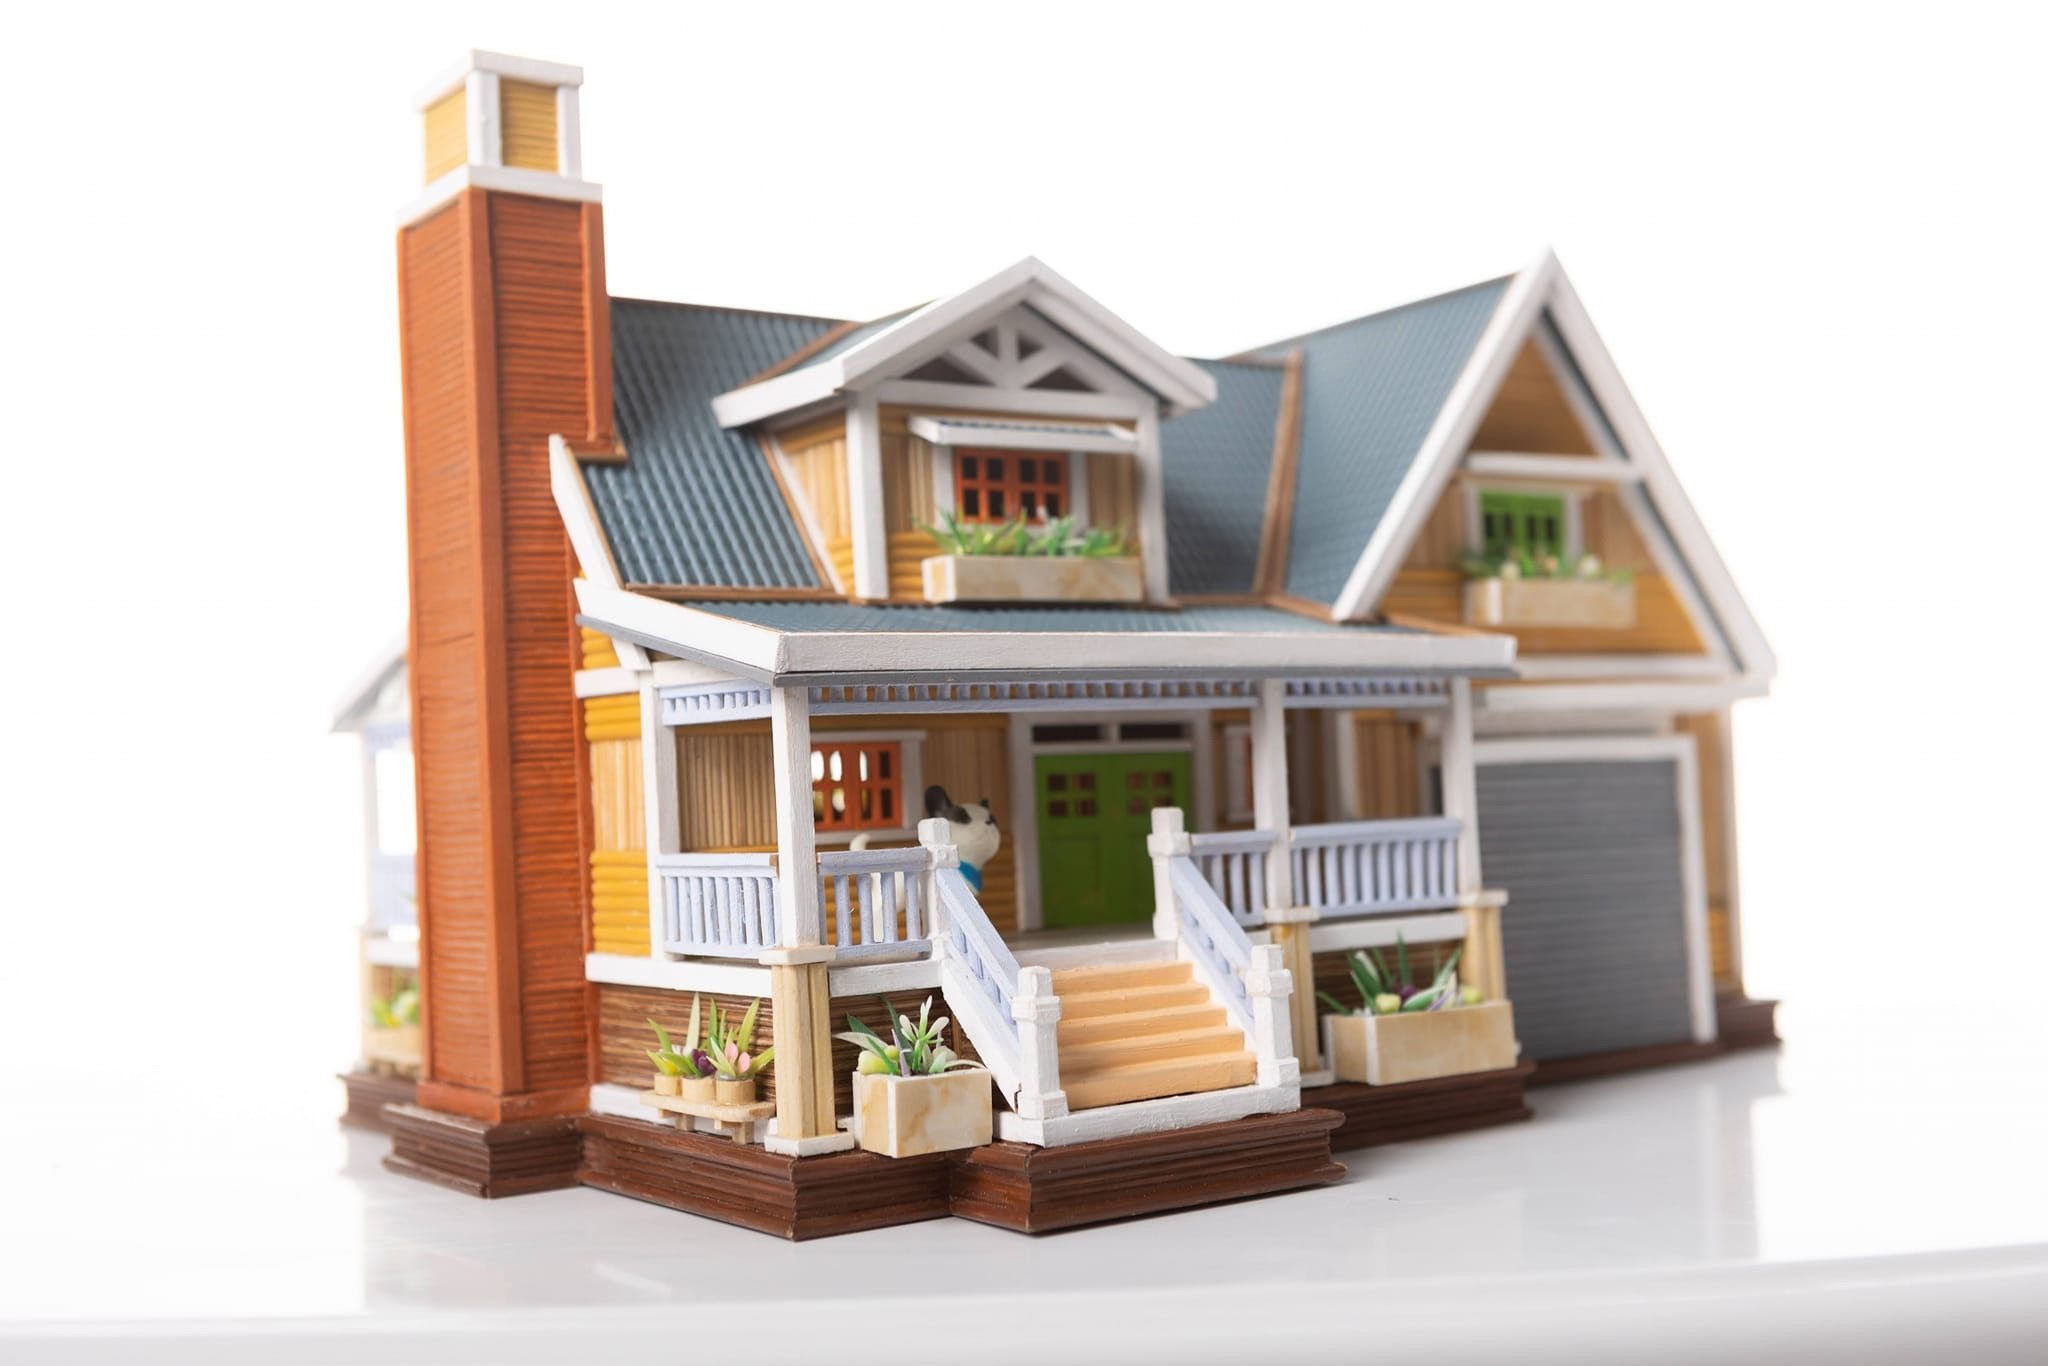 Hướng dẫn làm nhà bằng tăm tre mô hình đẹp đơn giản cho người mới bắt đầu